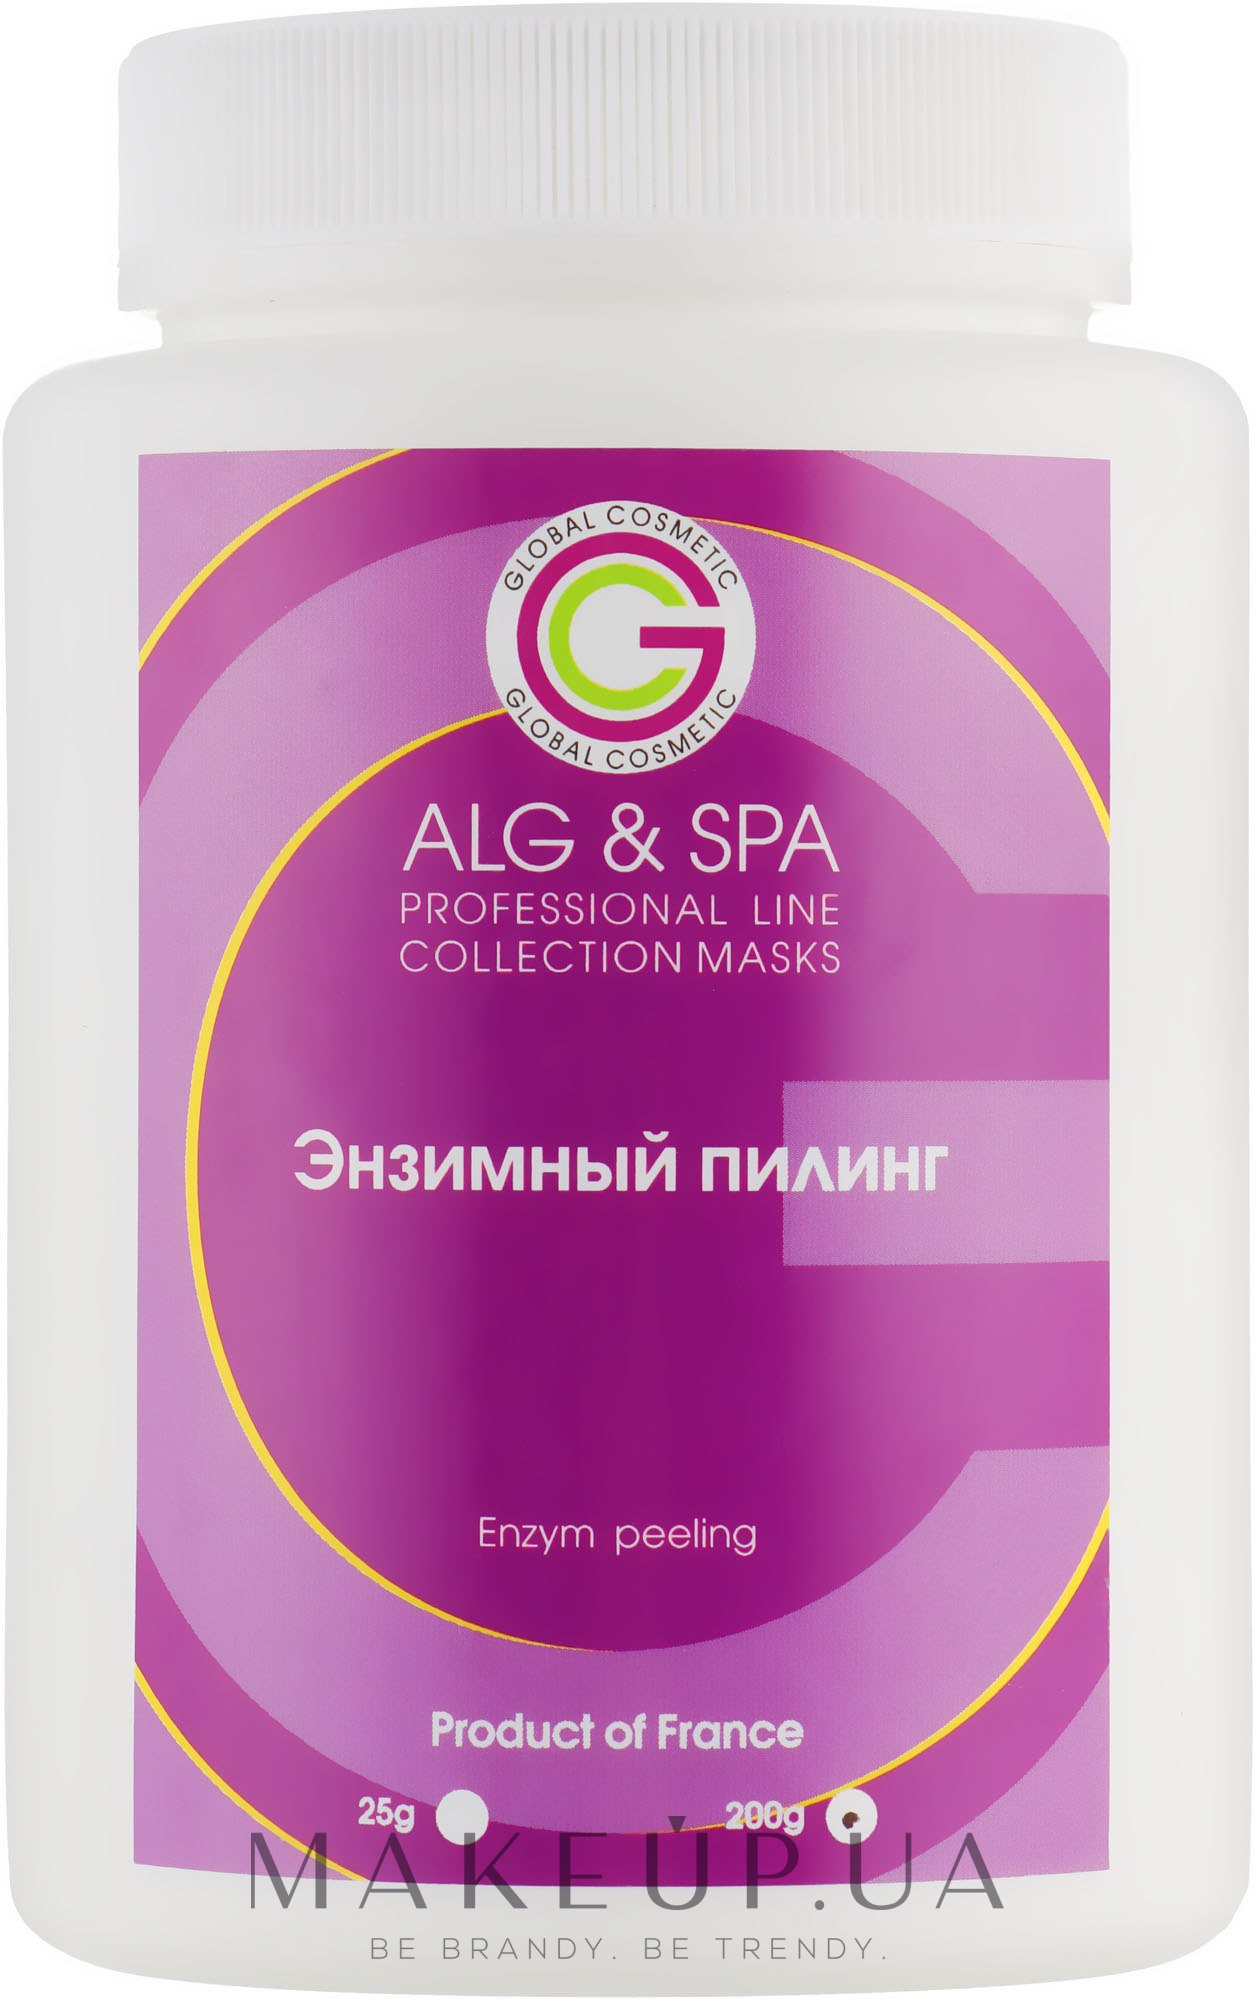 Маска Энзимный пилинг - ALG & SPA Professional Line Collection Masks Enzym Peeling  — фото 200g